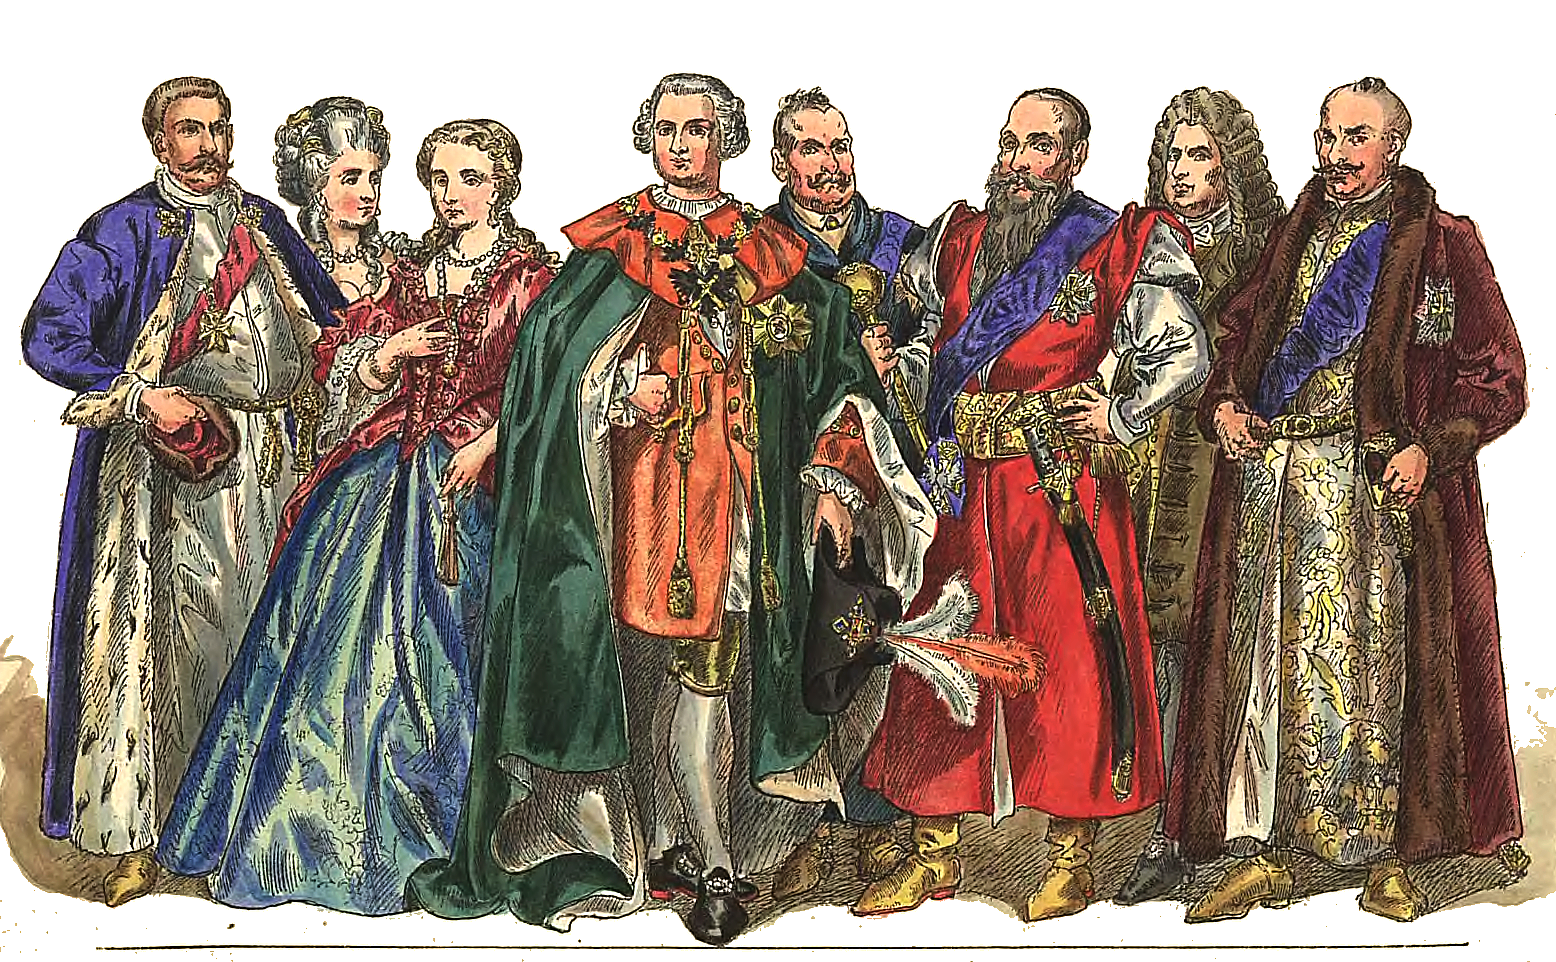 Ilustracja przedstawia polską magnaterię oraz ich tradycyjne stroje. Mężczyźni ubrani w niebieskie, czerwone, zielone szaty i peleryny obszyte futrem. Kobiety w bogatych sukniach i naszyjnikach z pereł. Wszyscy mają piękne fryzury, czasem peruki. 